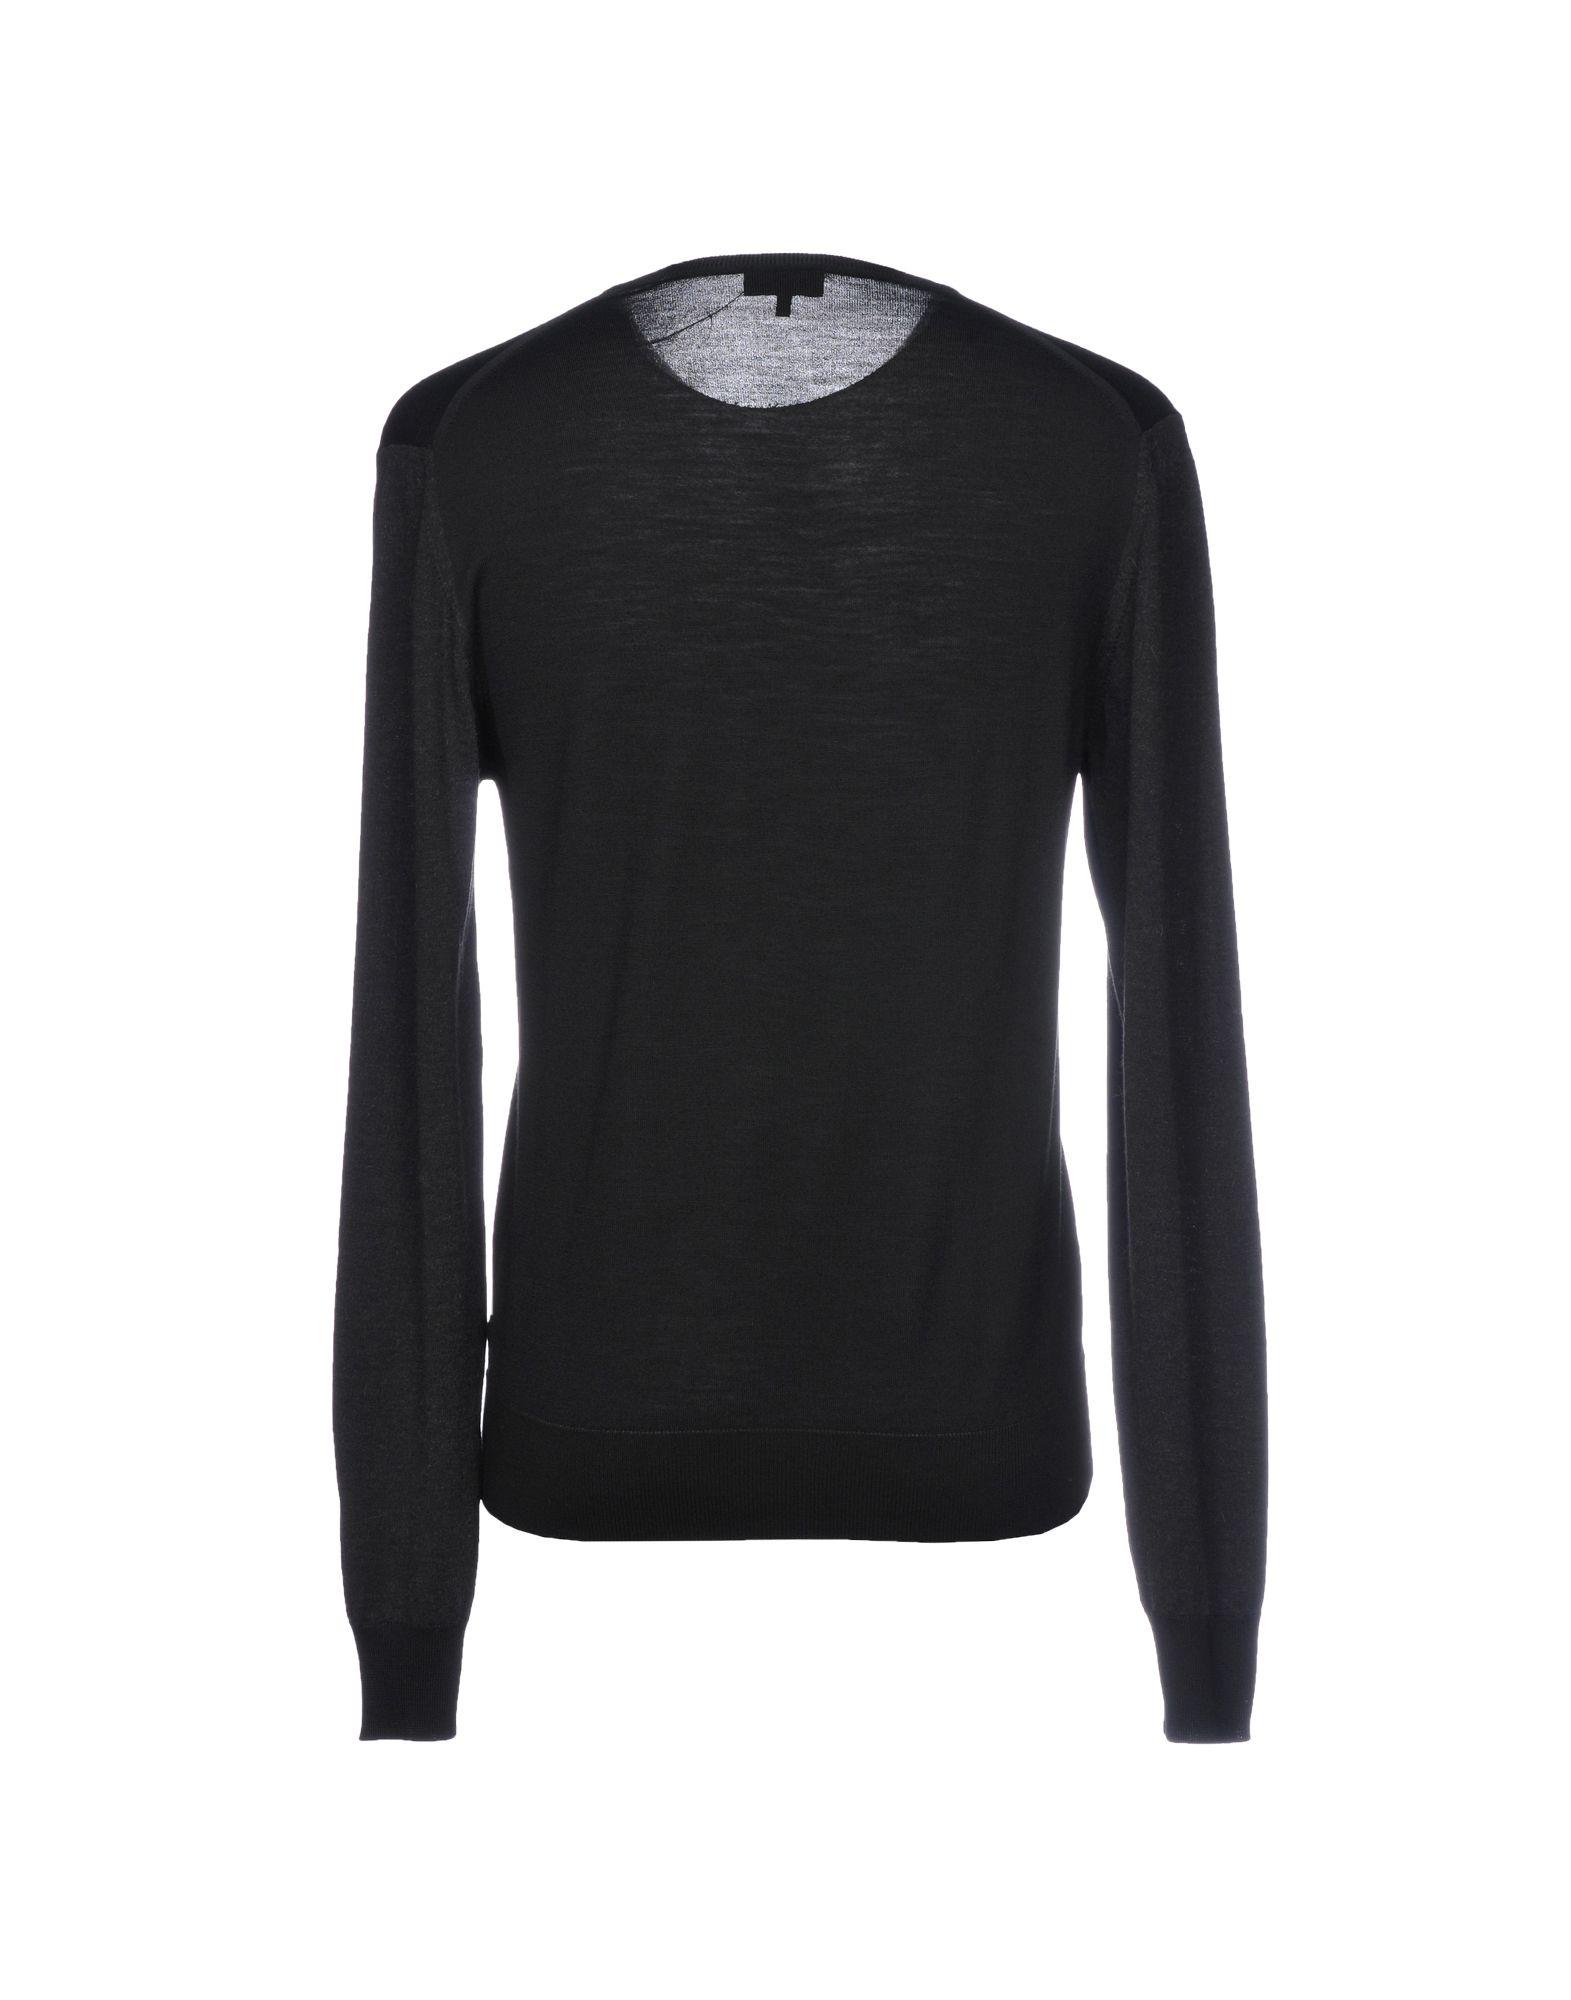 Lanvin Wool Sweater in Black for Men - Lyst